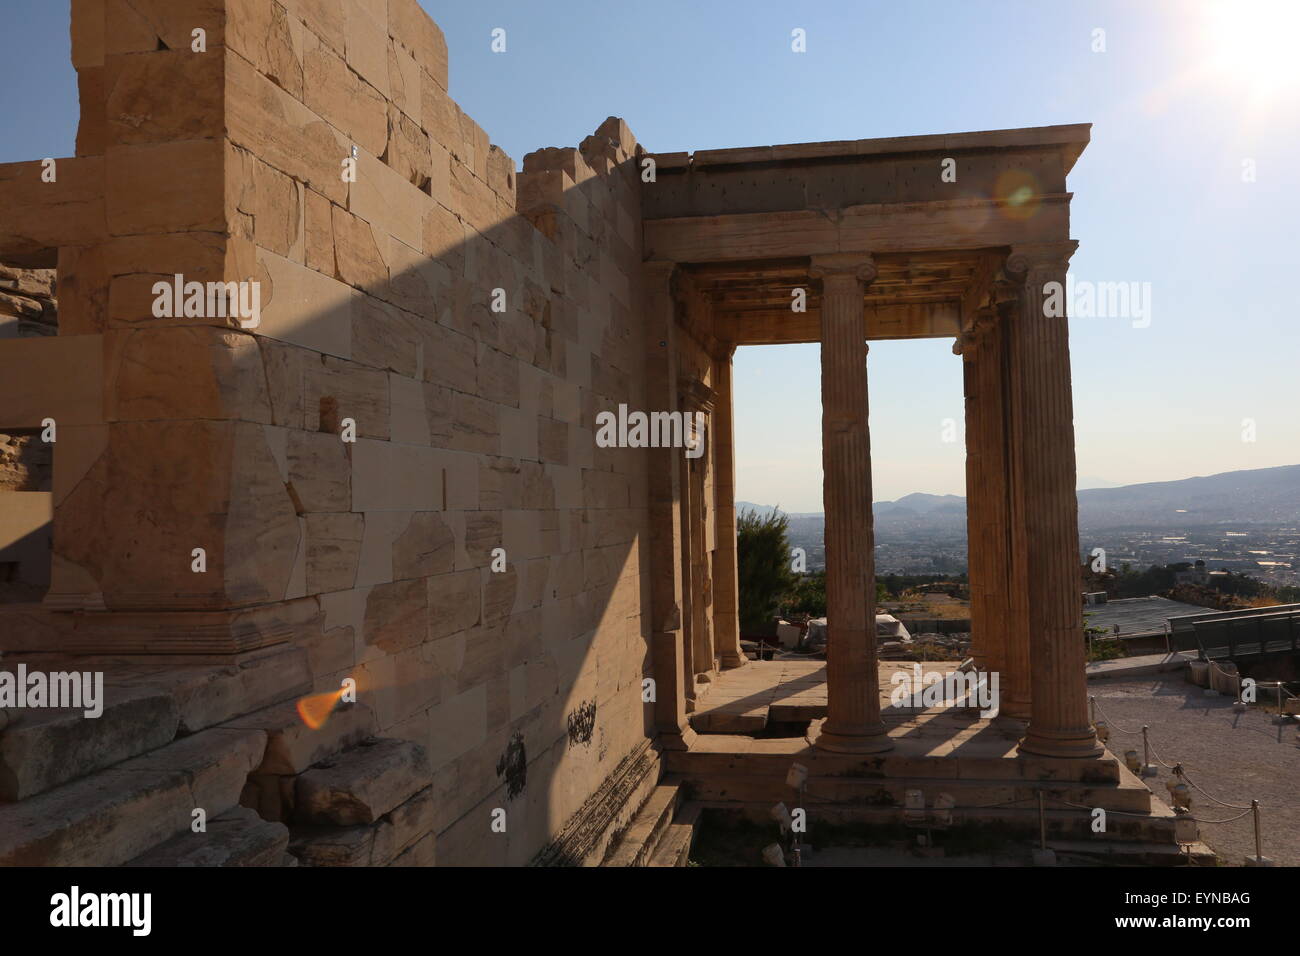 Erechtheion, Acropolis monuments in Athens Greece Stock Photo